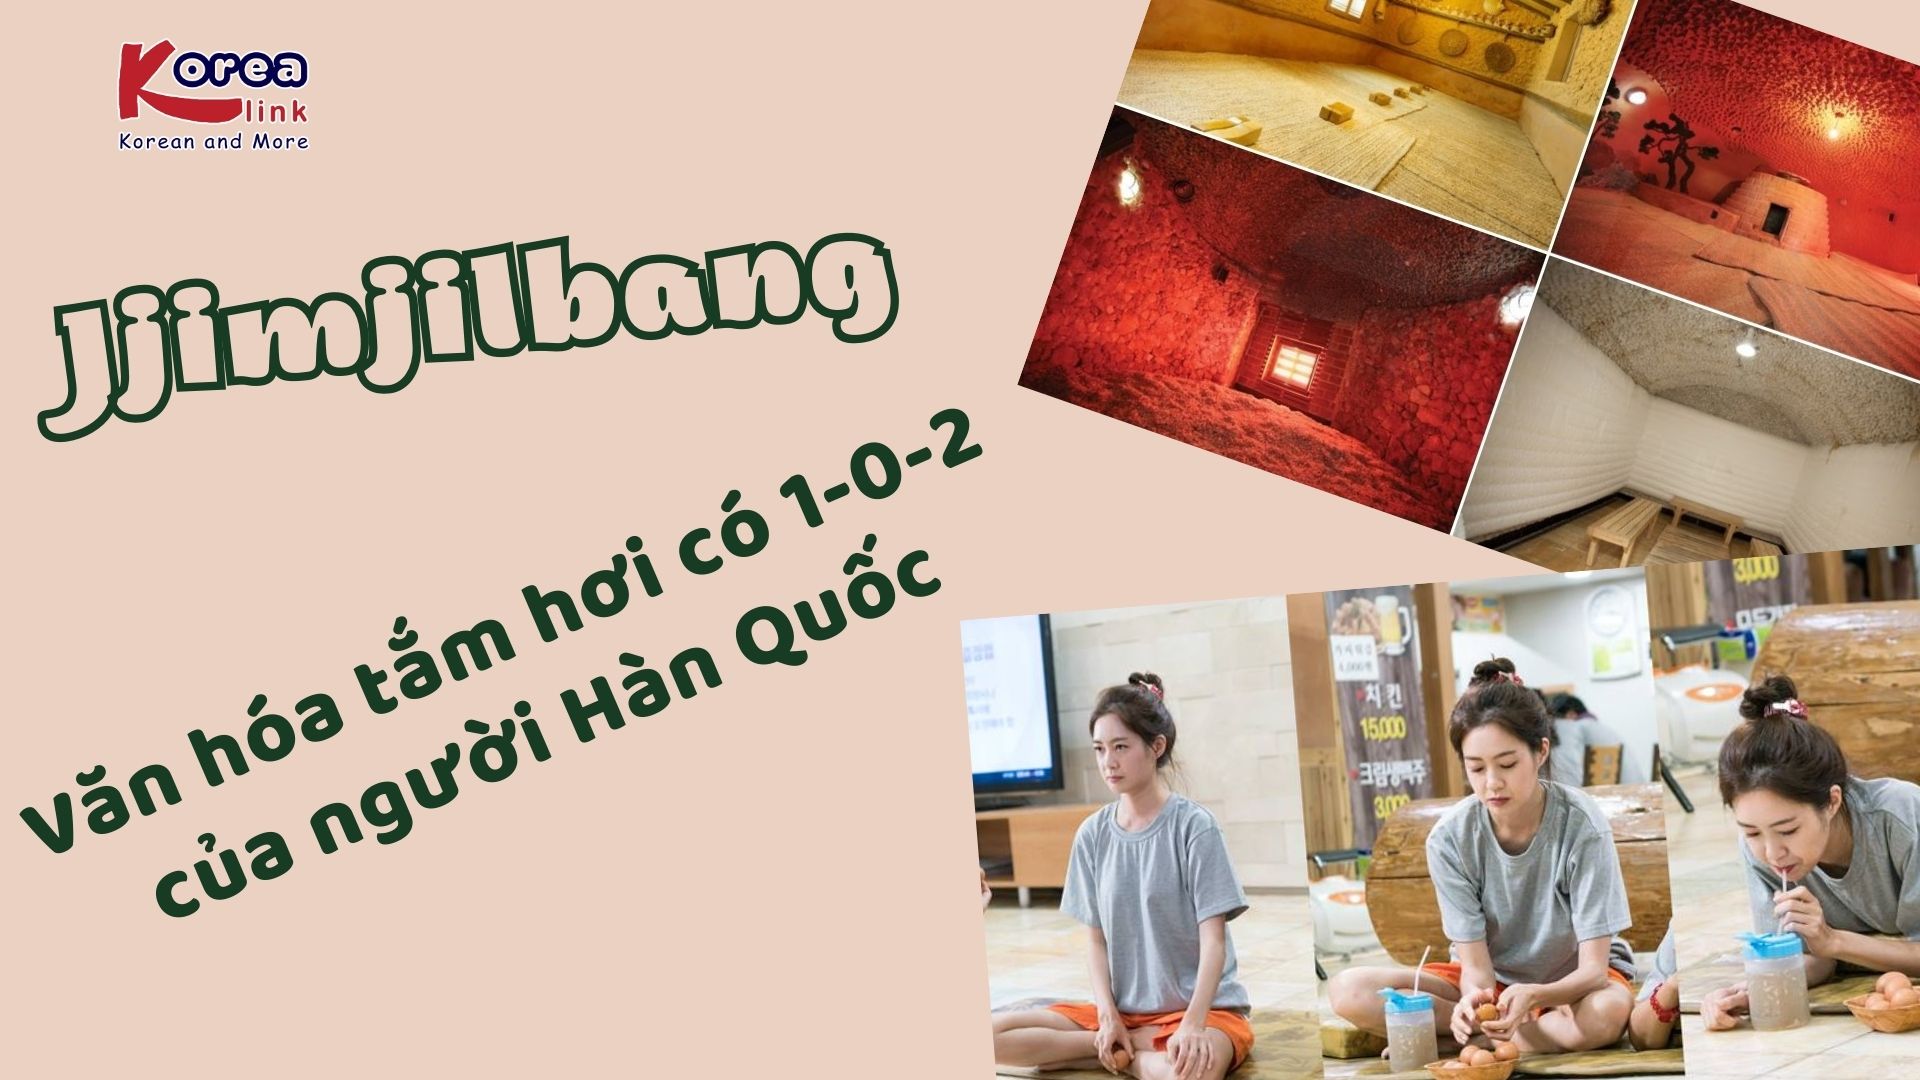 Jjimjilbang – Văn hóa tắm hơi có 1-0-2 của người Hàn Quốc